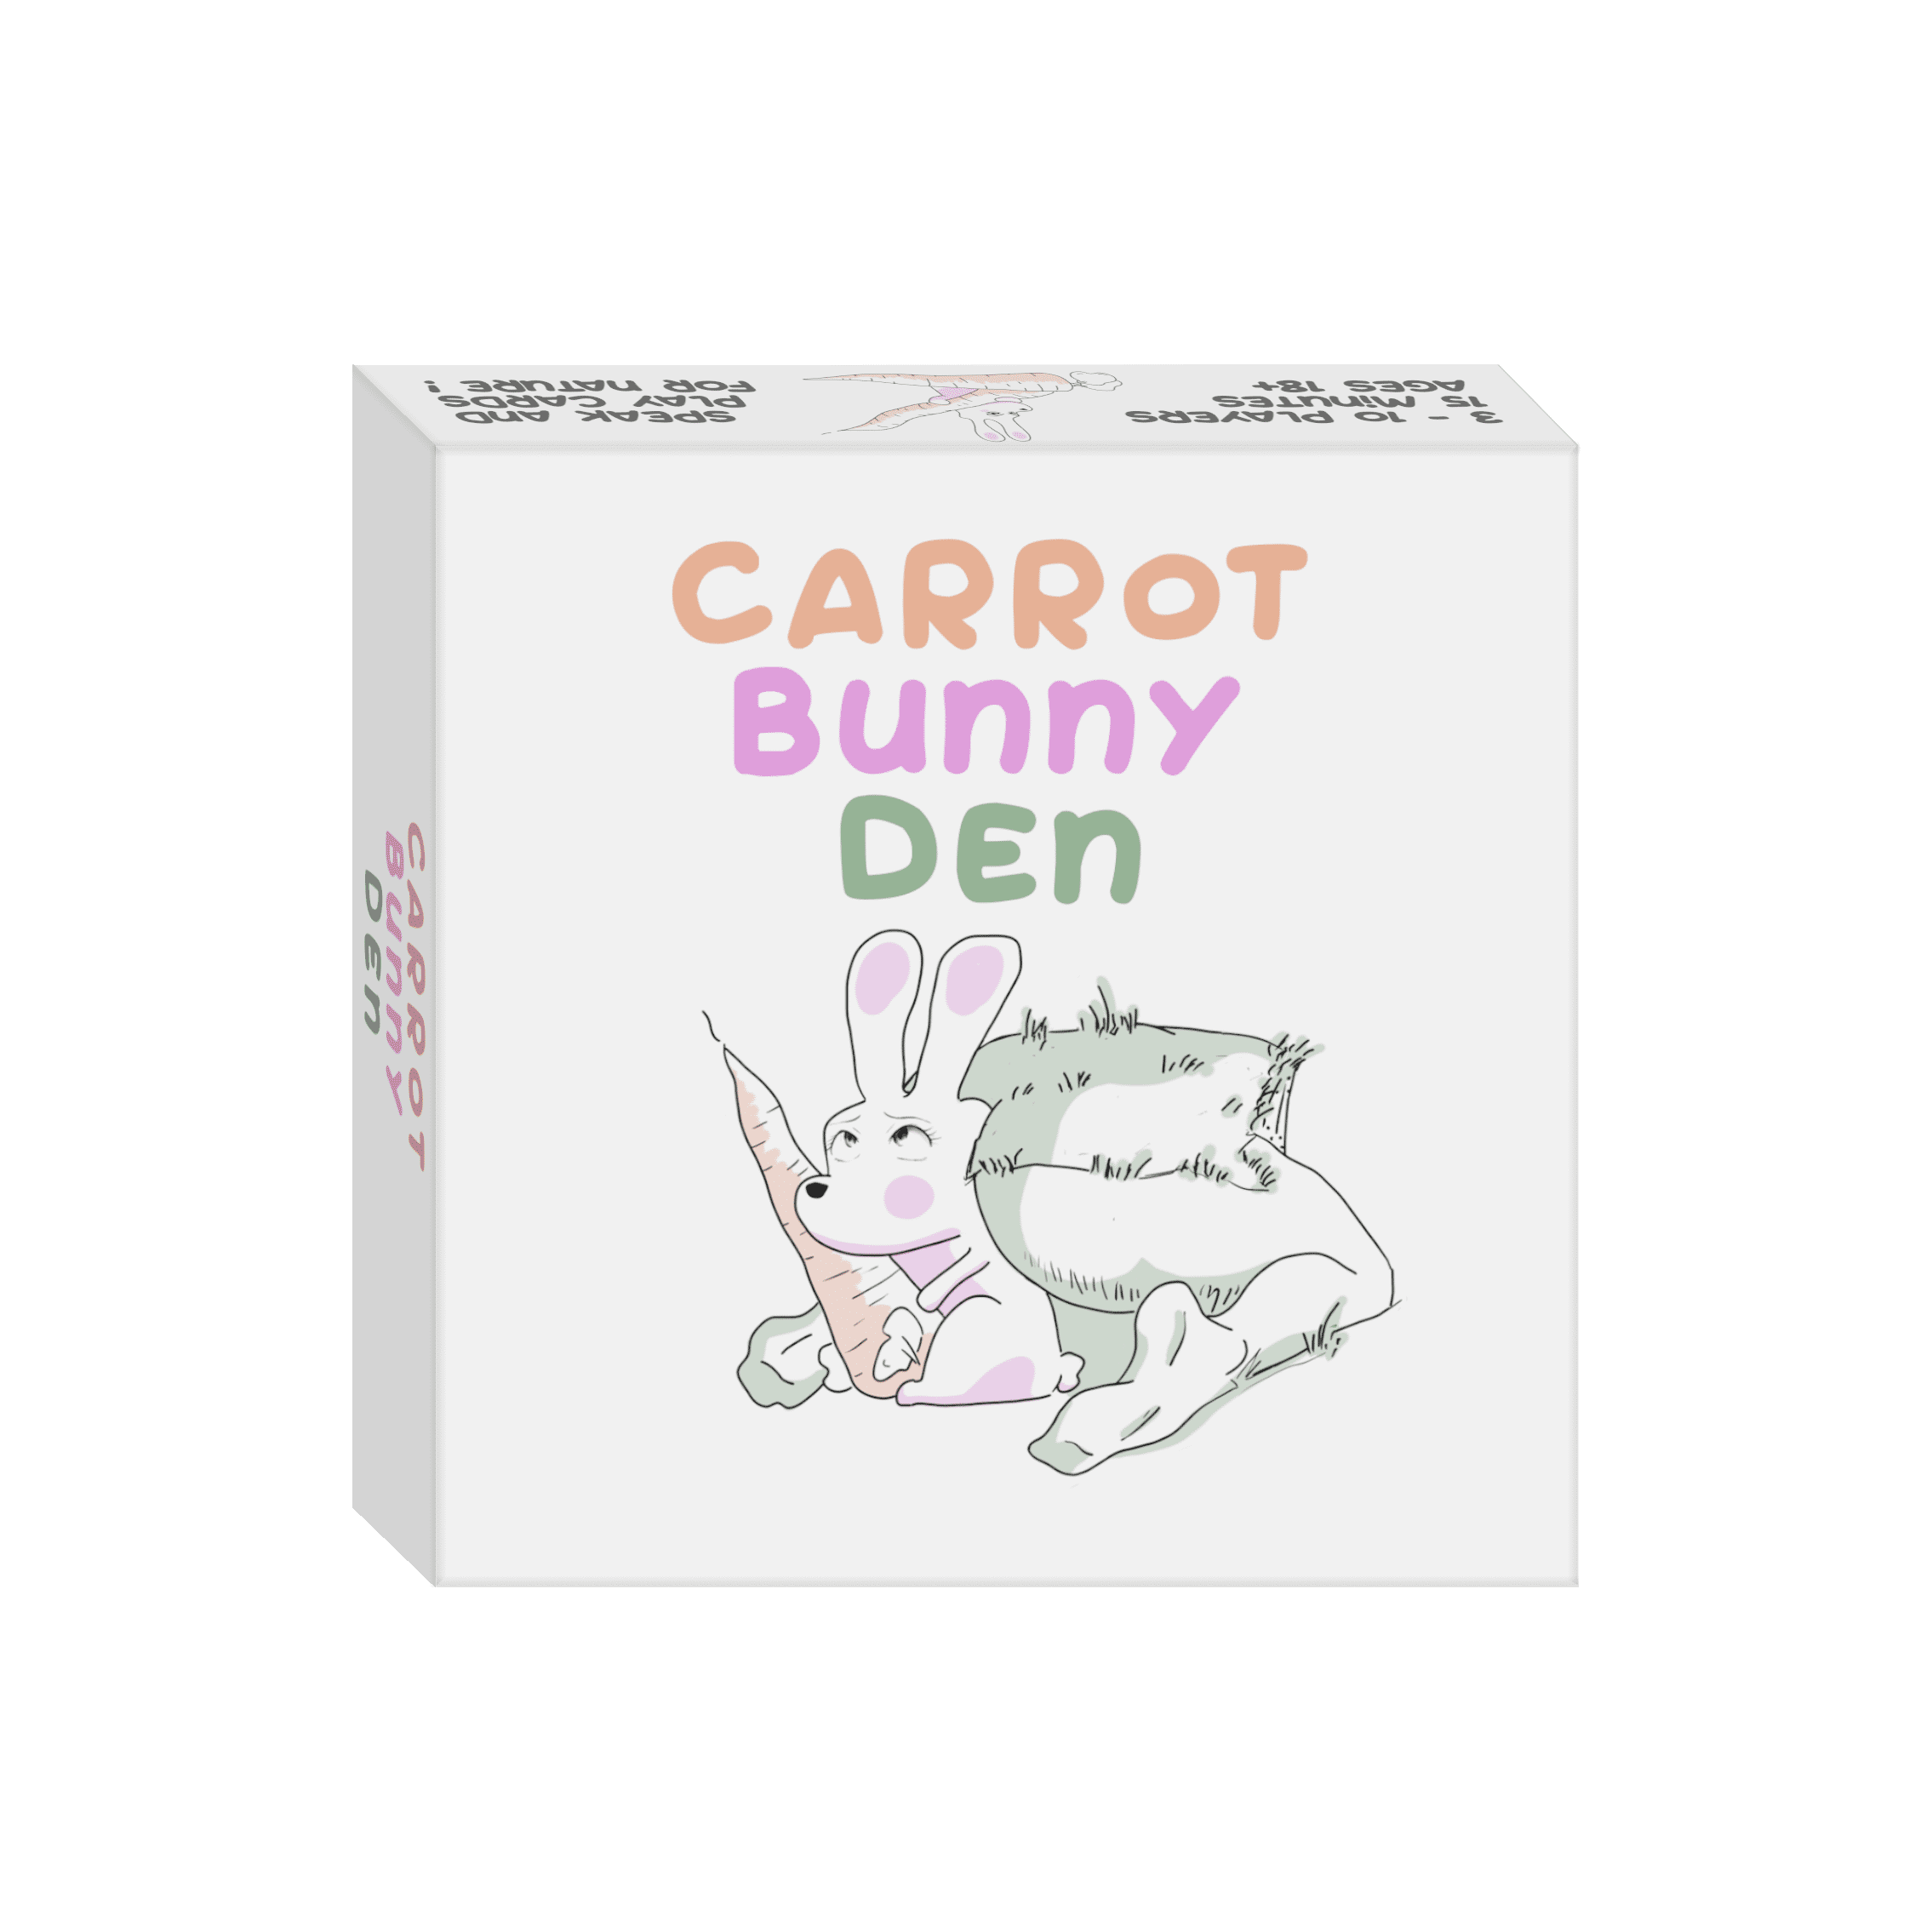 Carrot Bunny Den